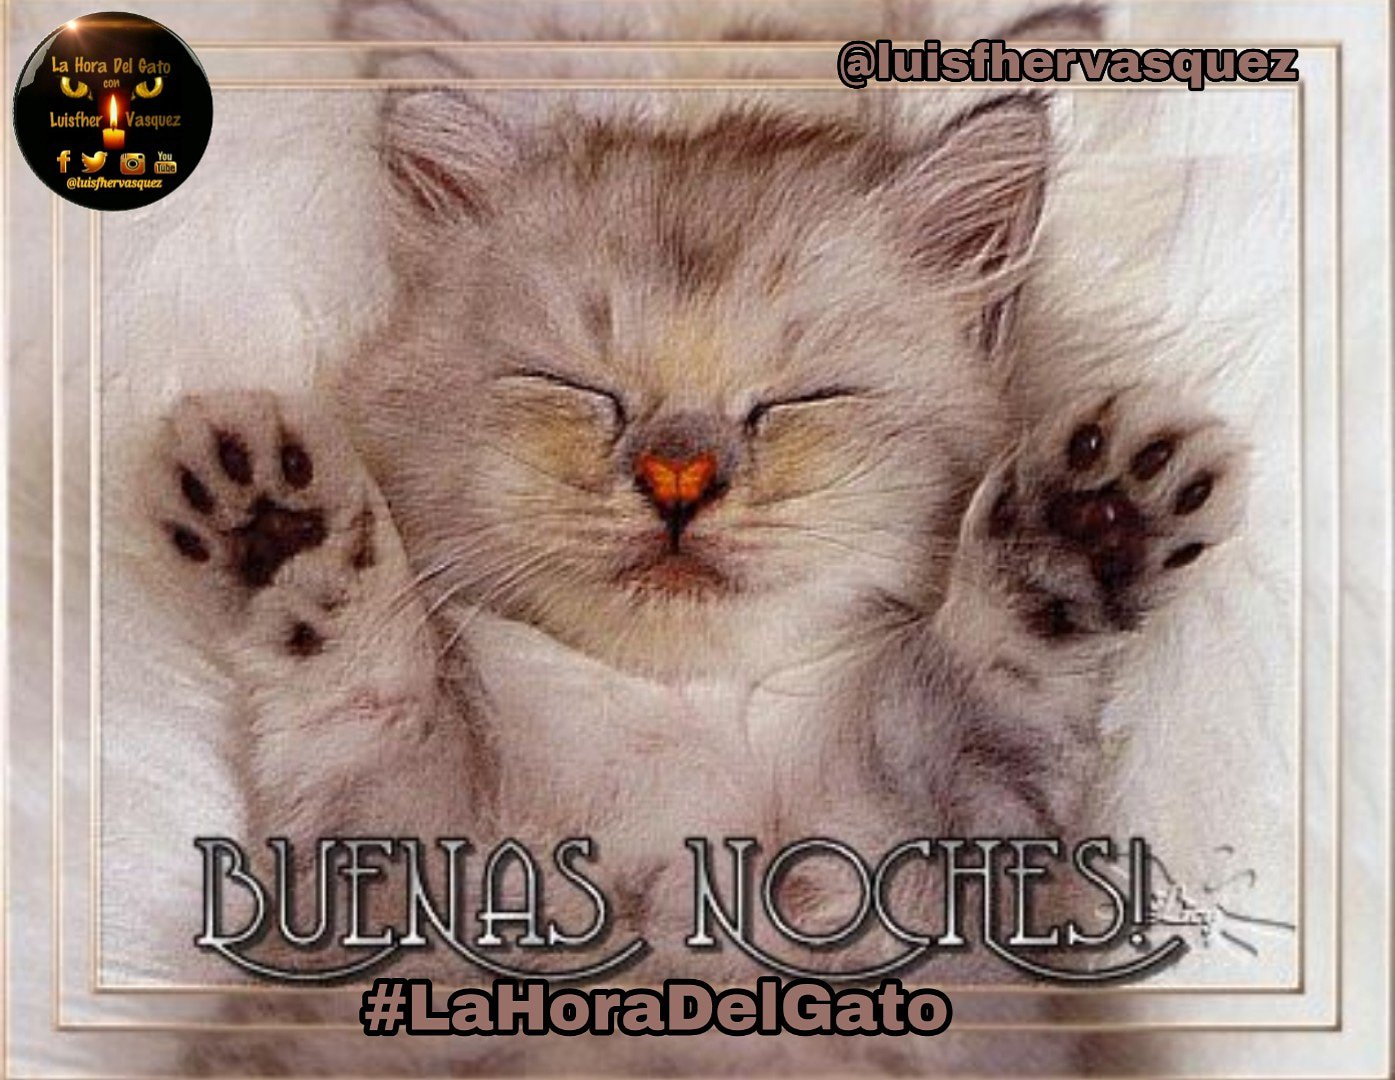 La Hora Del Gato on Twitter: 